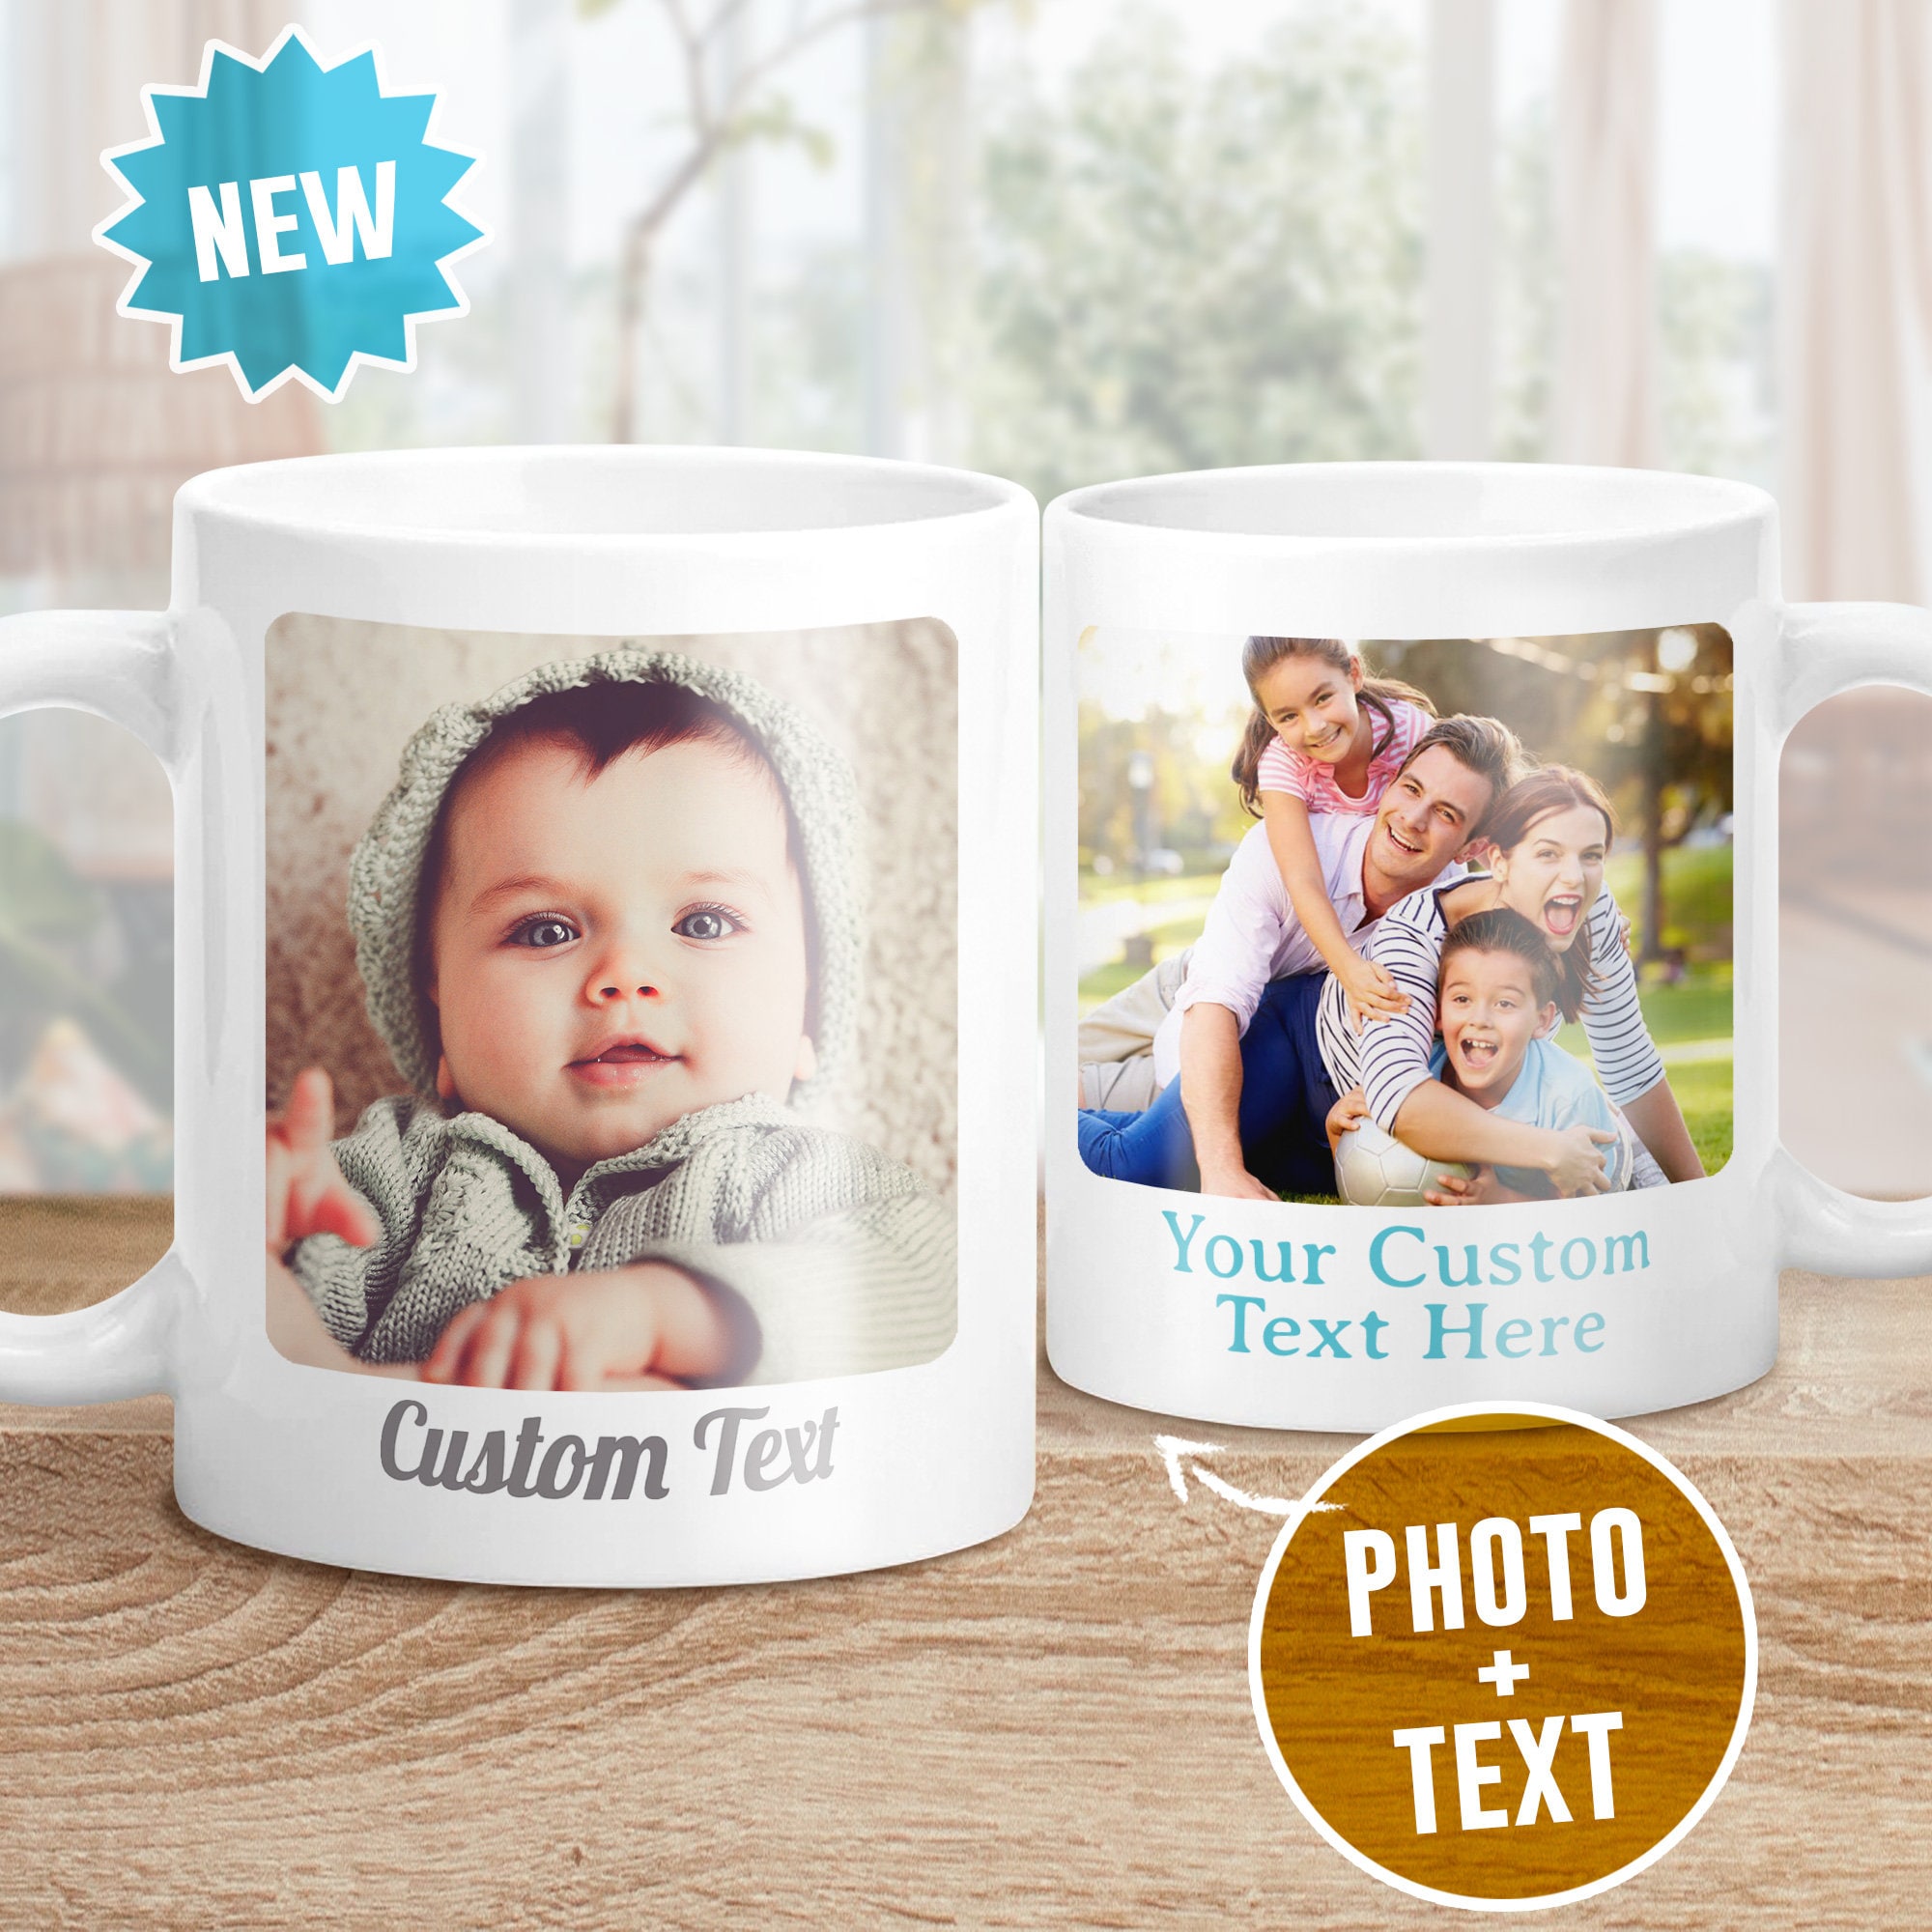  Tazas personalizadas con texto de imagen, taza de café  personalizada con regalos fotográficos para mamá, papá, amante, familia,  diseño de cerámica de 2 caras, regalo de otoño para mejores amigos, padre